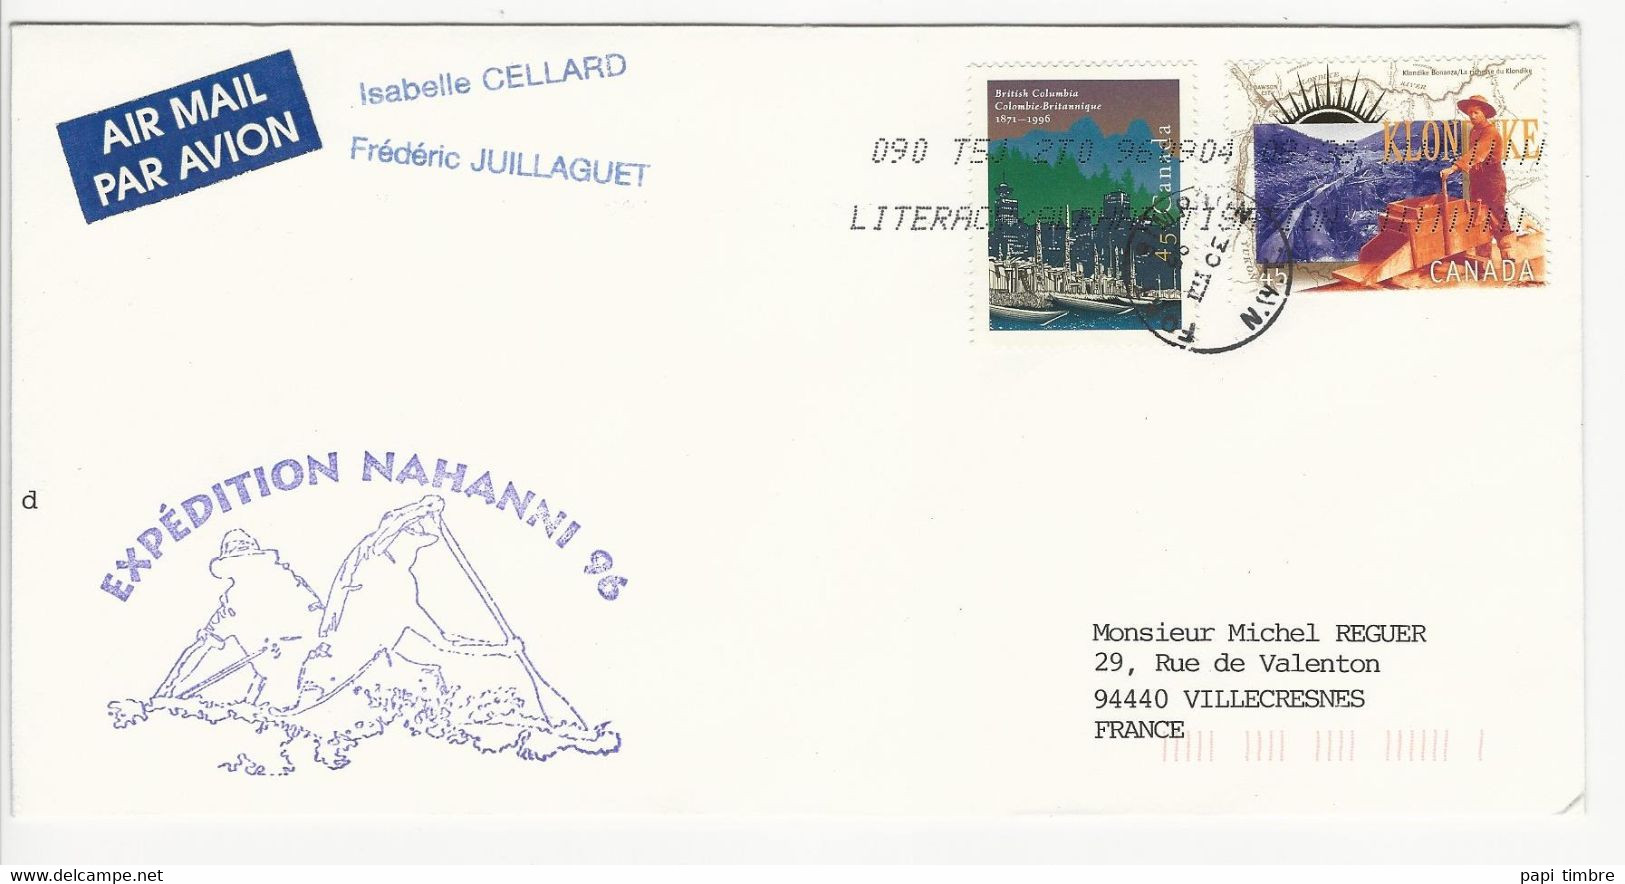 Enveloppe - Expédition NAHANNI 96 - Canada 30/VIII/96 - Programmes Scientifiques